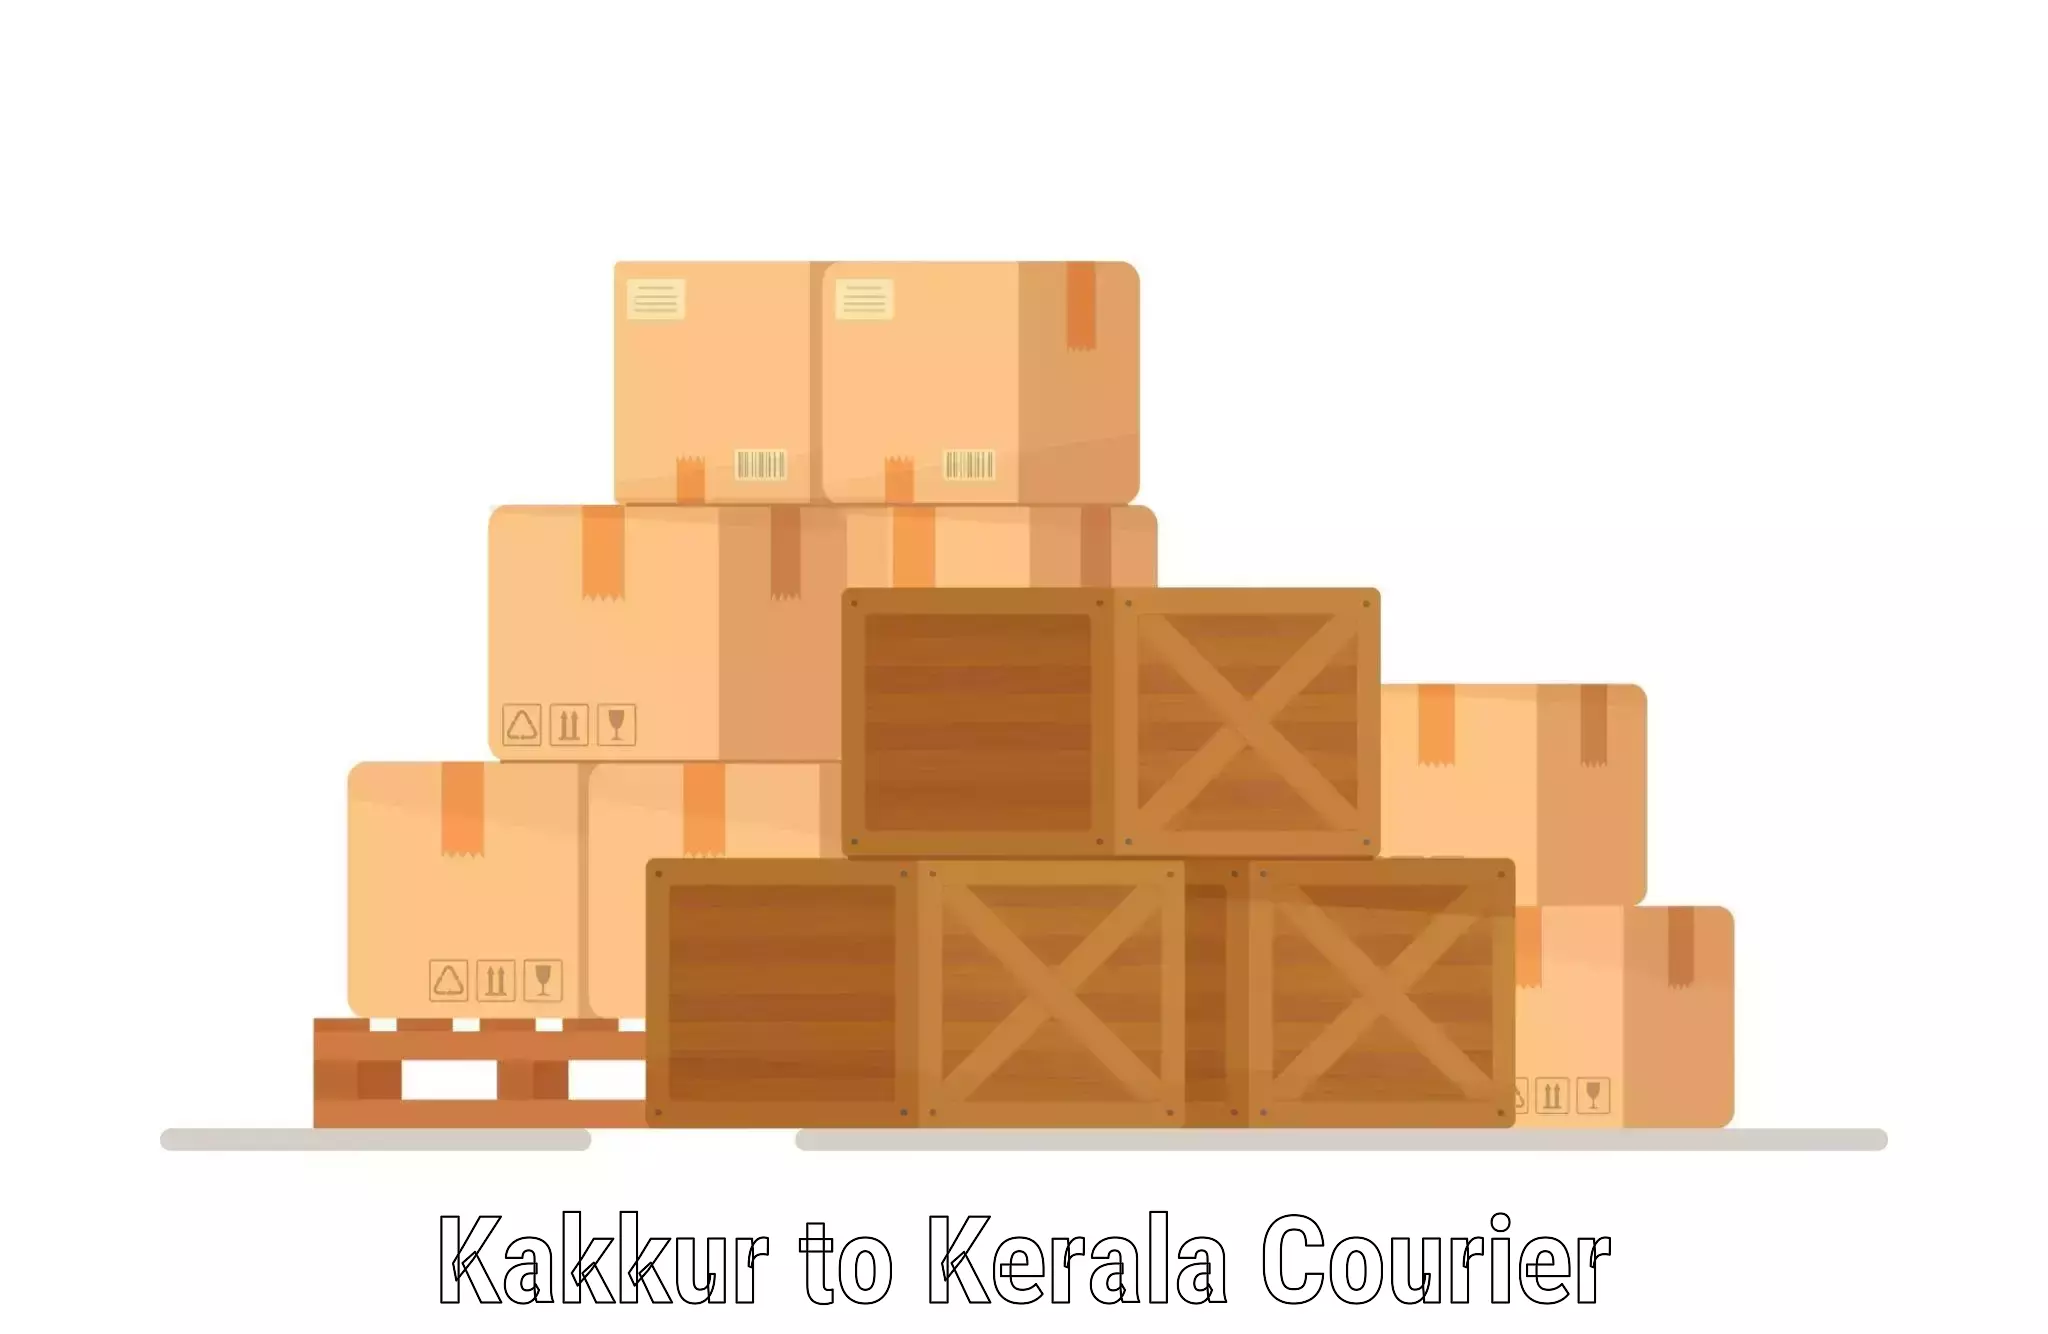 Efficient shipping platforms Kakkur to Pazhayannur